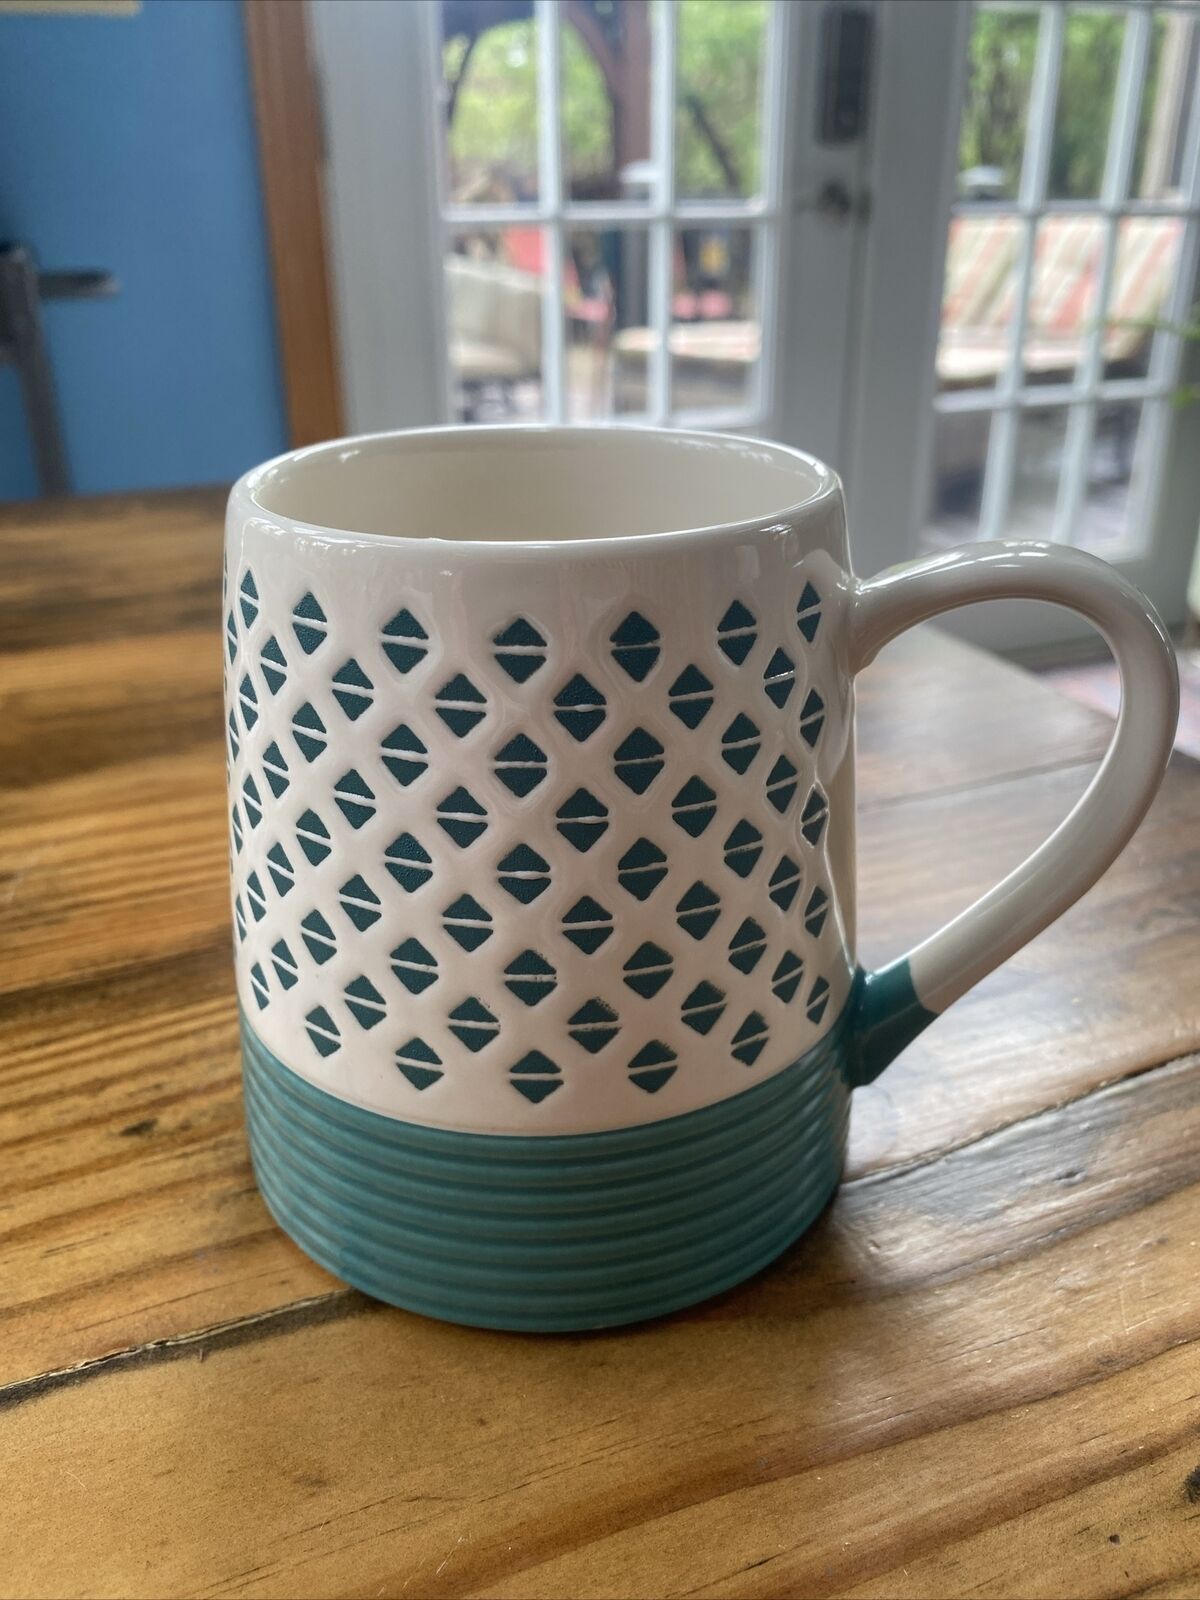 The Pottery Company Coffee Mug